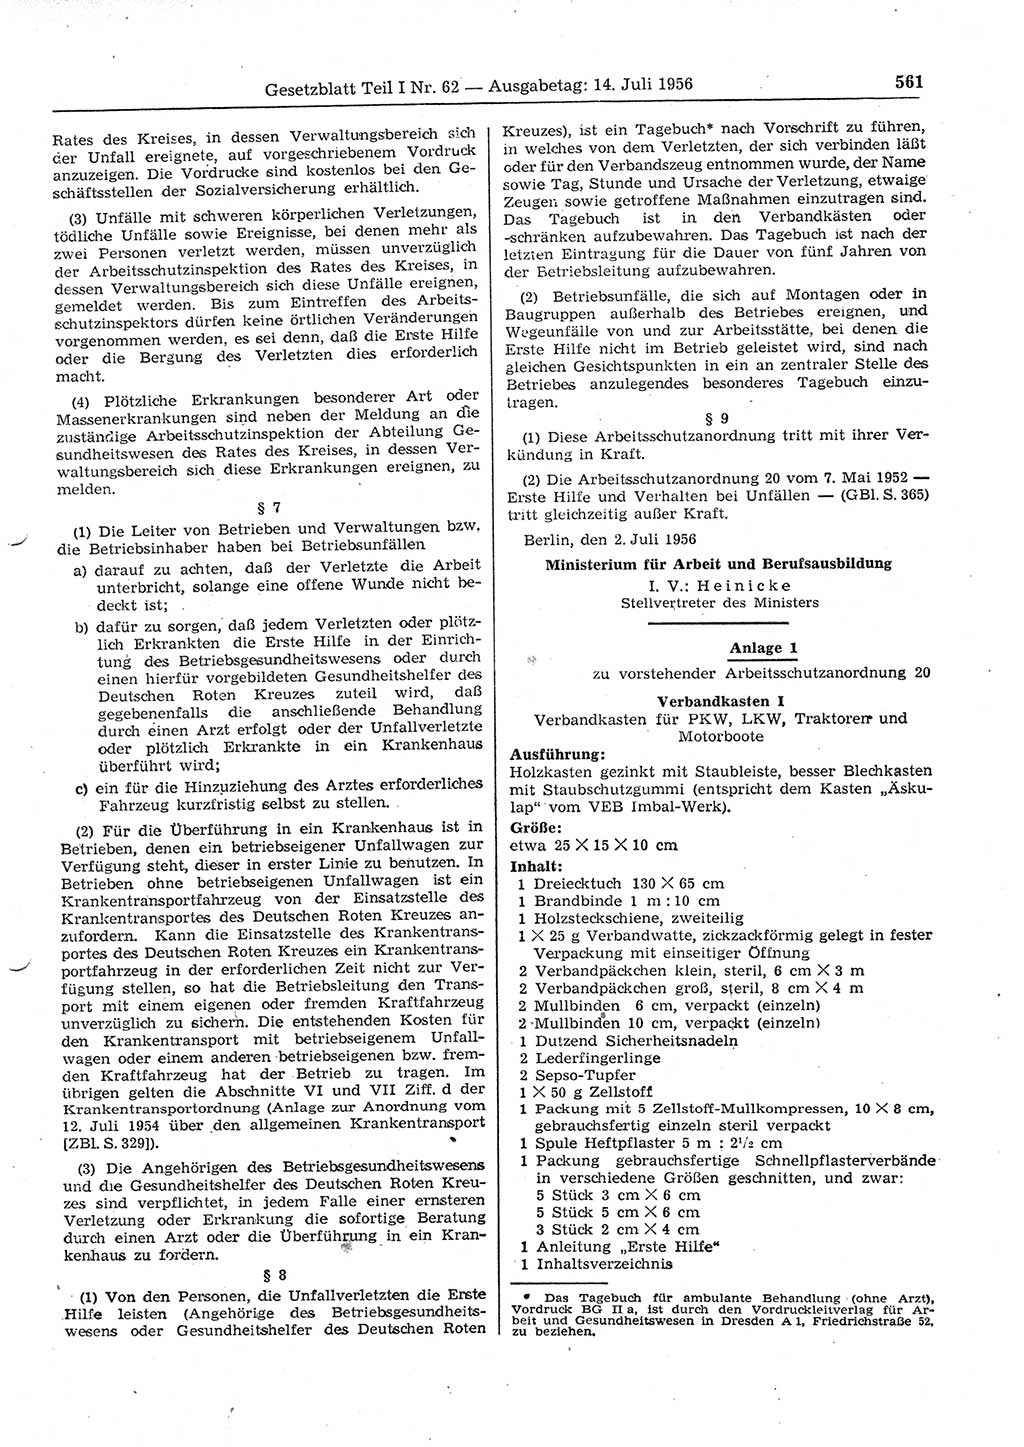 Gesetzblatt (GBl.) der Deutschen Demokratischen Republik (DDR) Teil Ⅰ 1956, Seite 561 (GBl. DDR Ⅰ 1956, S. 561)